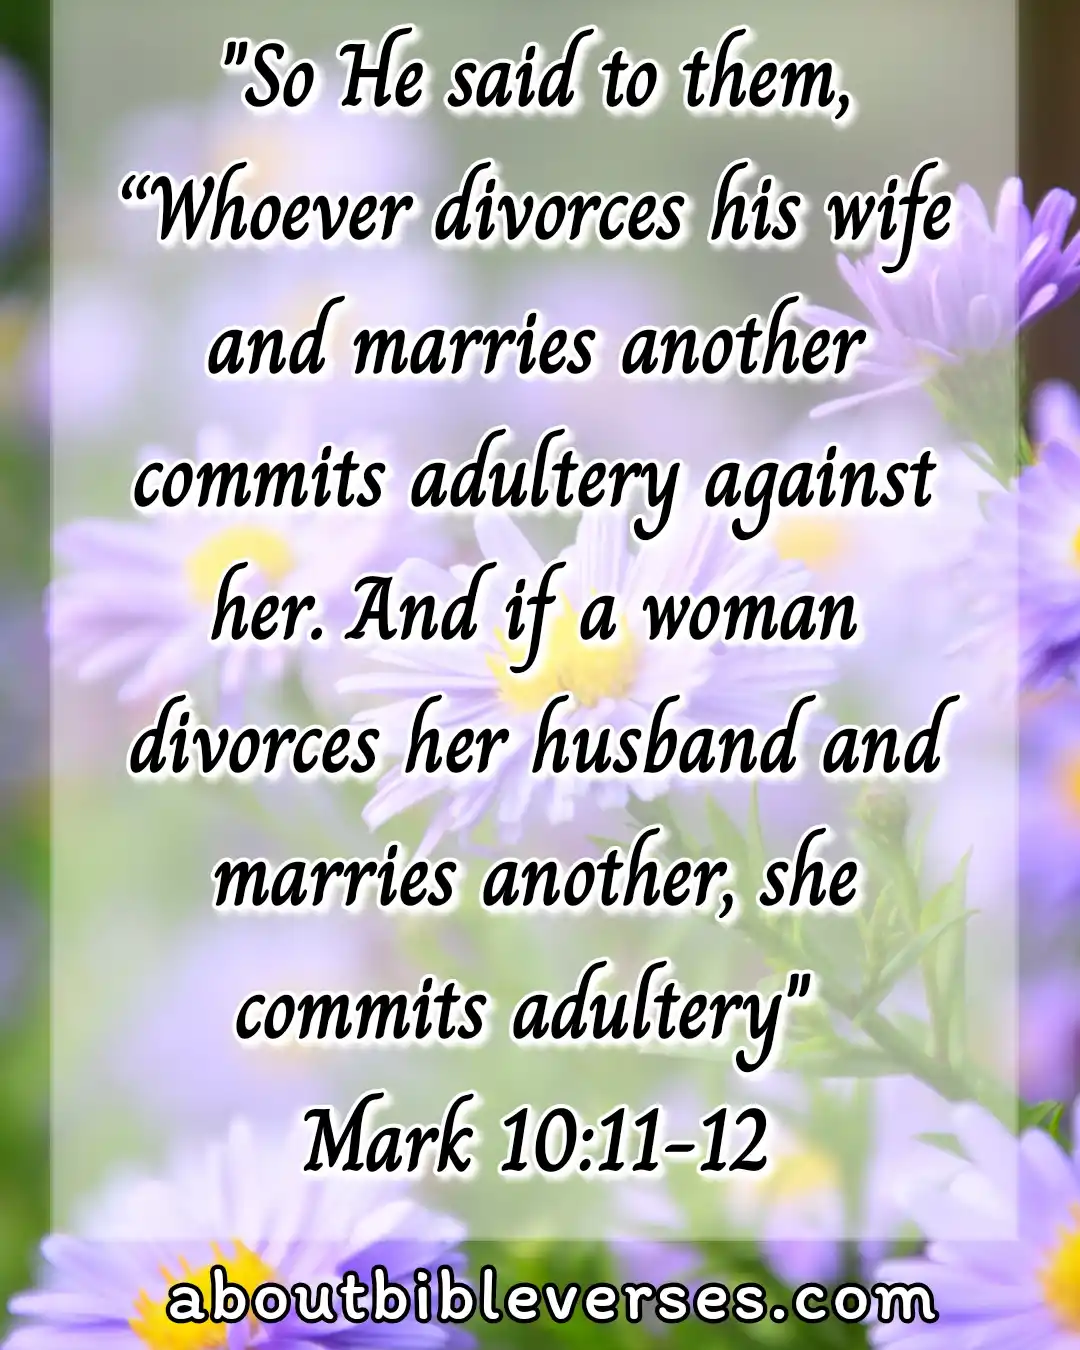 [Best] Más de 20 versículos bíblicos sobre el matrimonio y la familia.